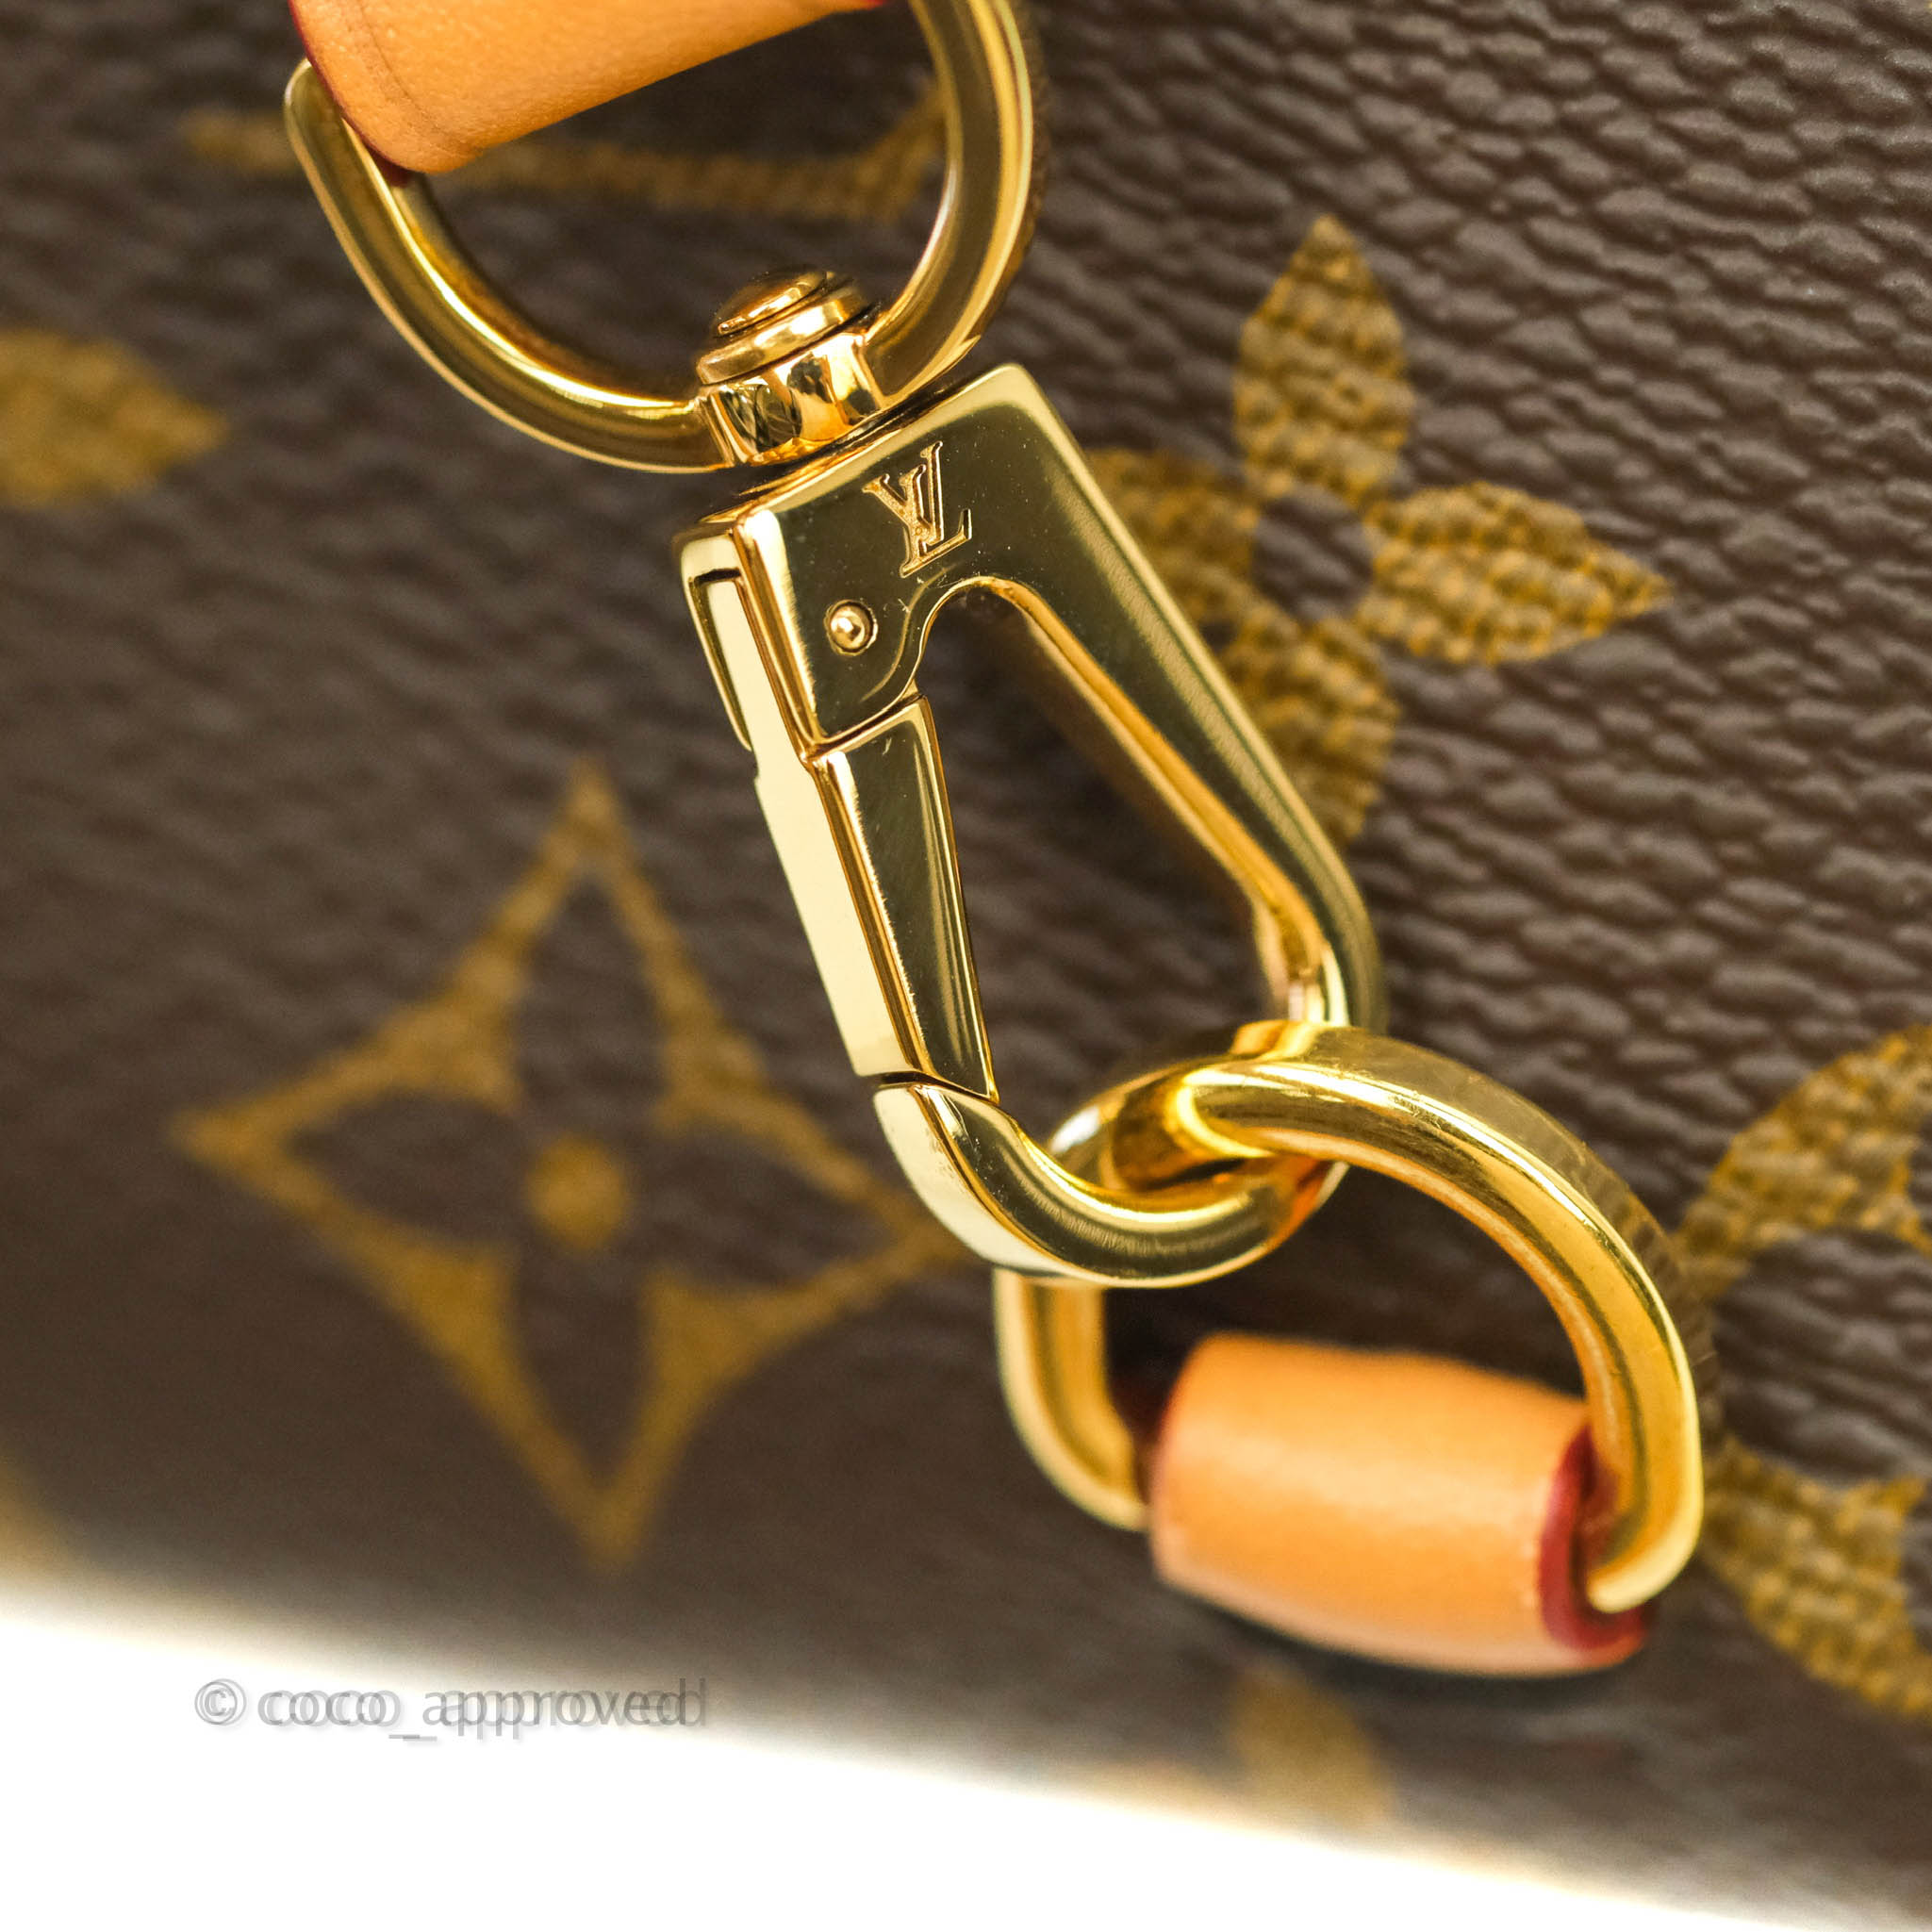 Shop Louis Vuitton Montsouris bb (M45516) by LESSISMORE☆